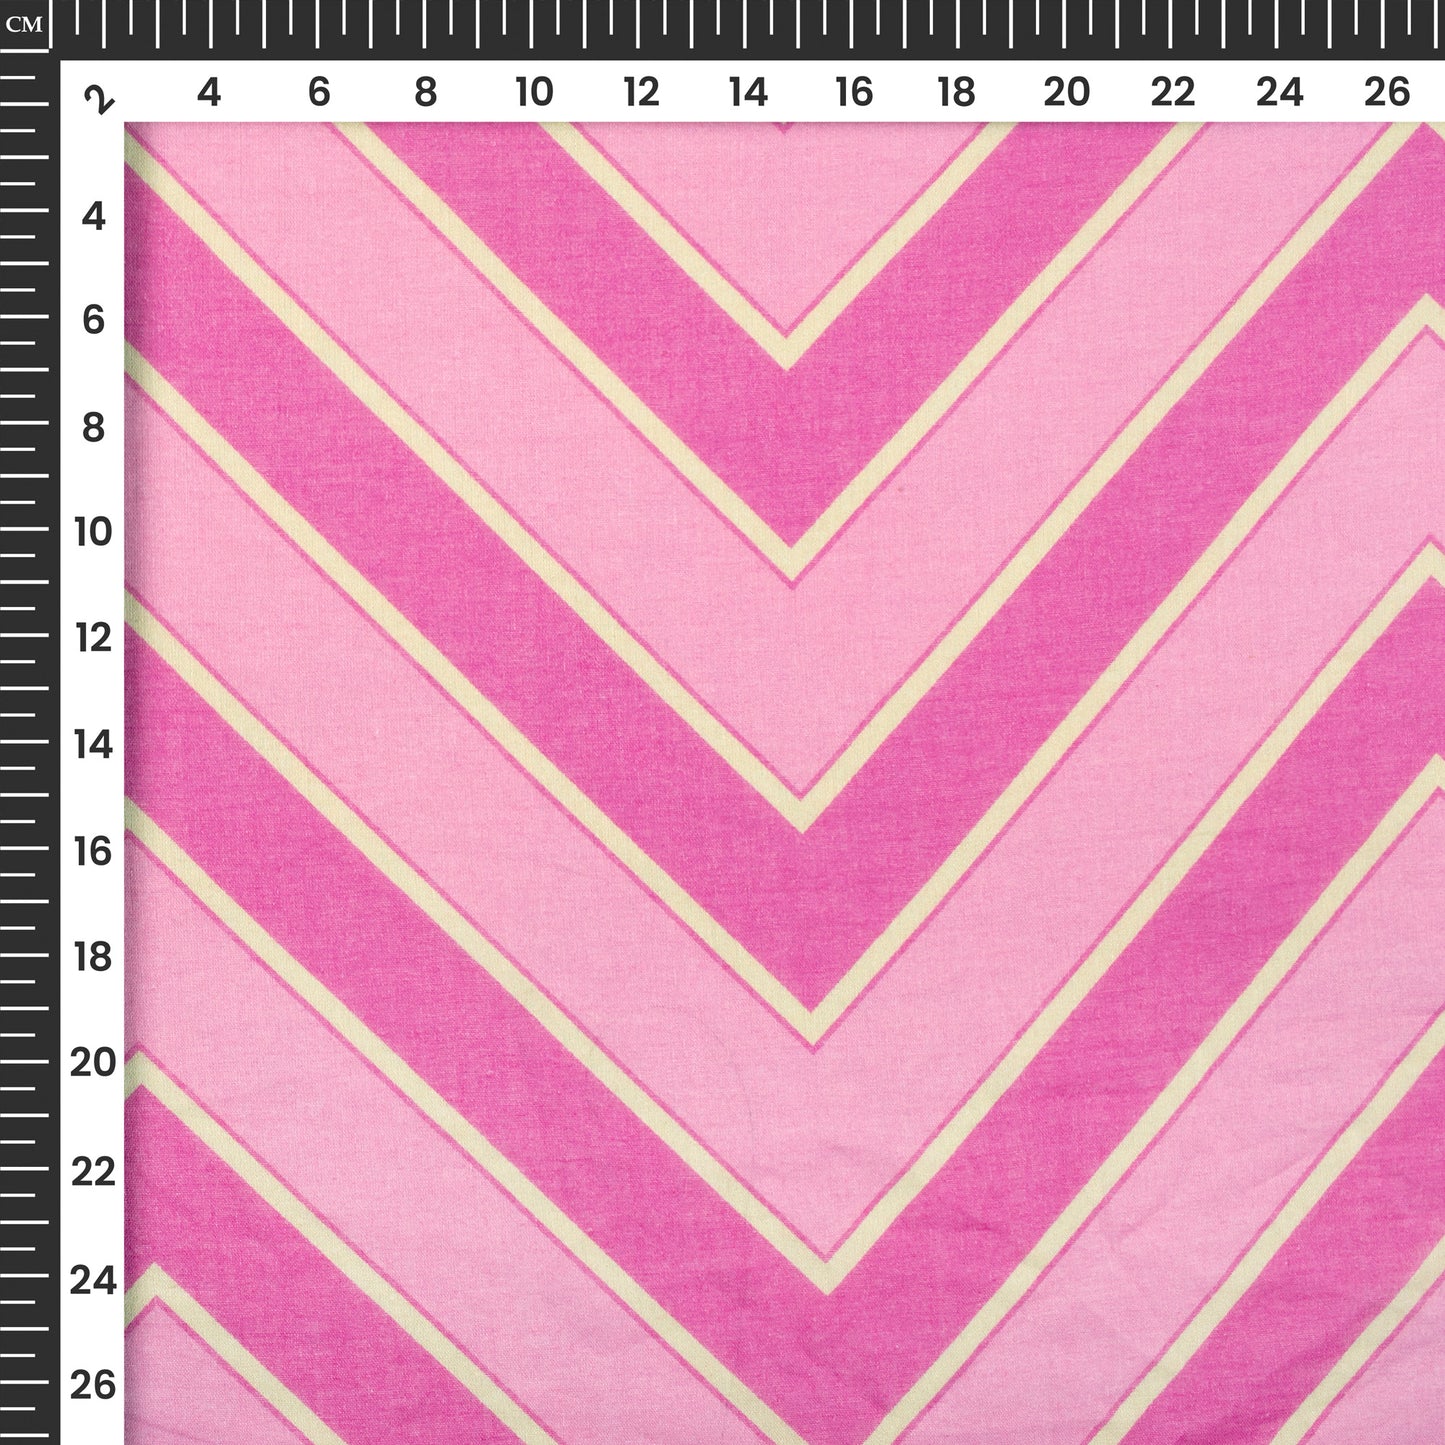 Fuscia Pink Chevron Digital Print Pure Cotton Mulmul Fabric